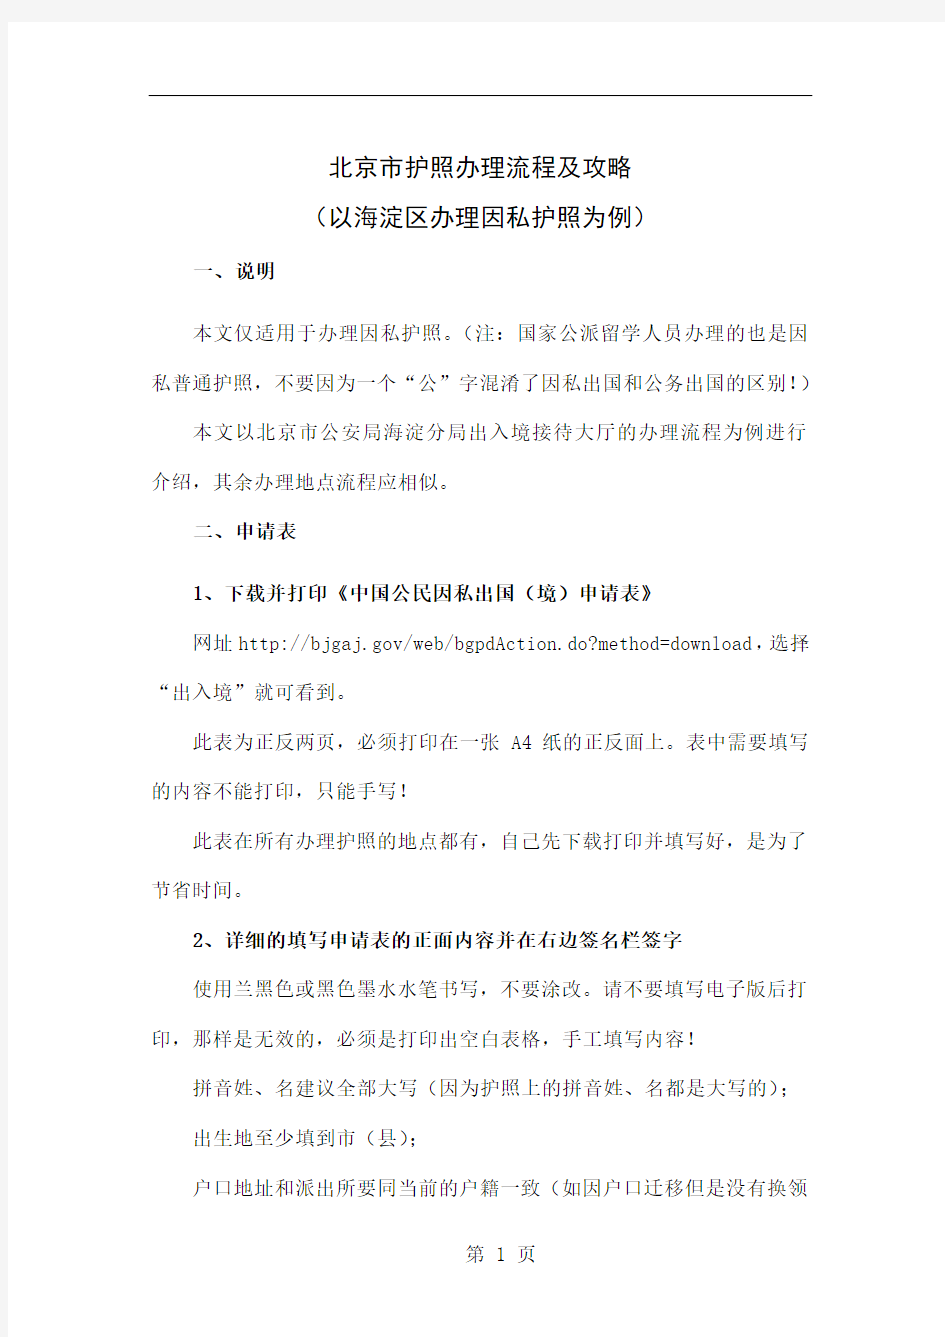 北京市护照办理流程及攻略(以海淀区办理因私护照为例)共13页文档